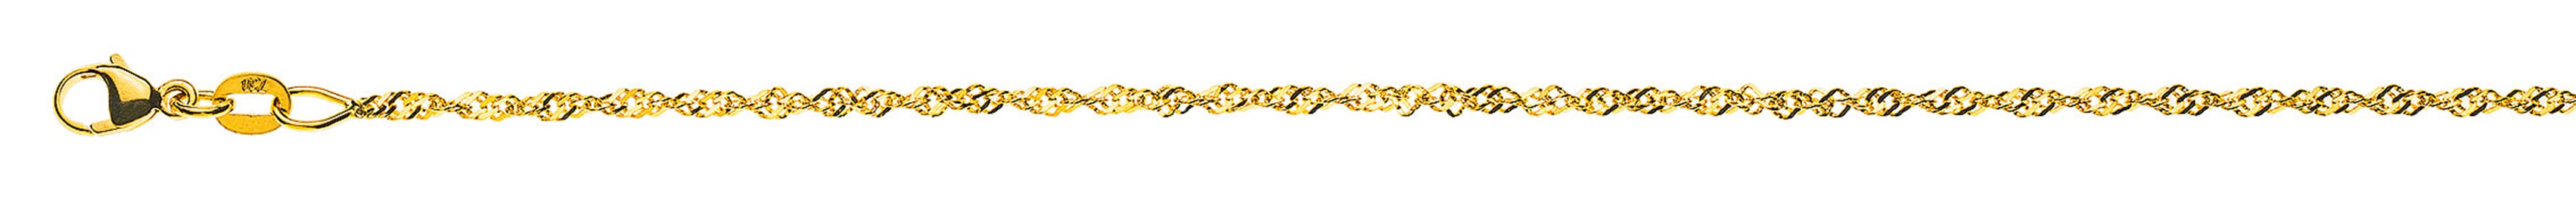 AURONOS Prestige Necklace Yellow Gold 18K Singapore Chain 40cm 1.5mm